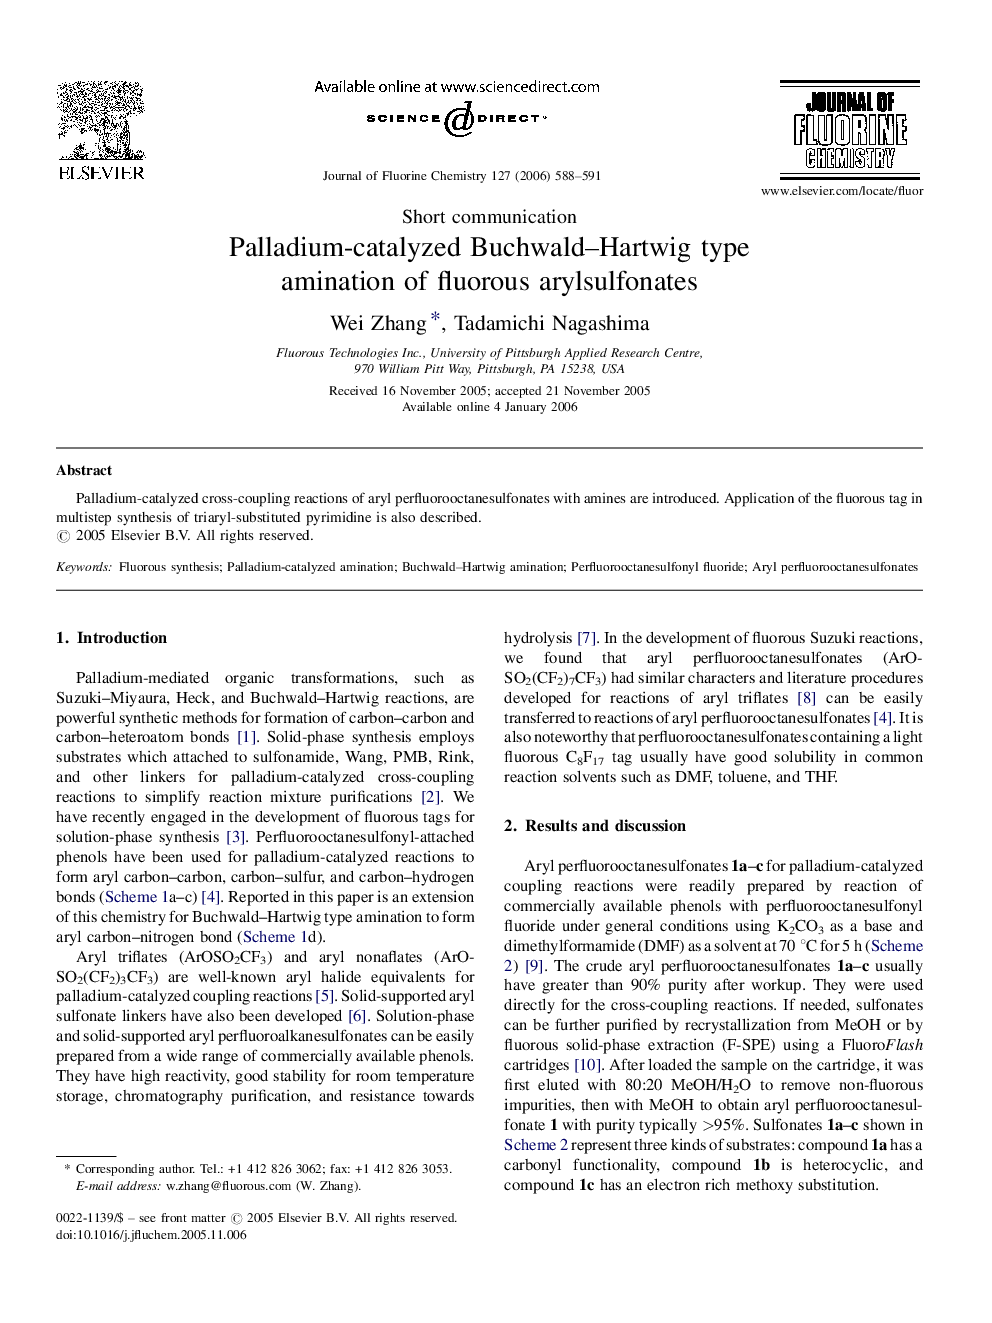 Palladium-catalyzed Buchwald–Hartwig type amination of fluorous arylsulfonates